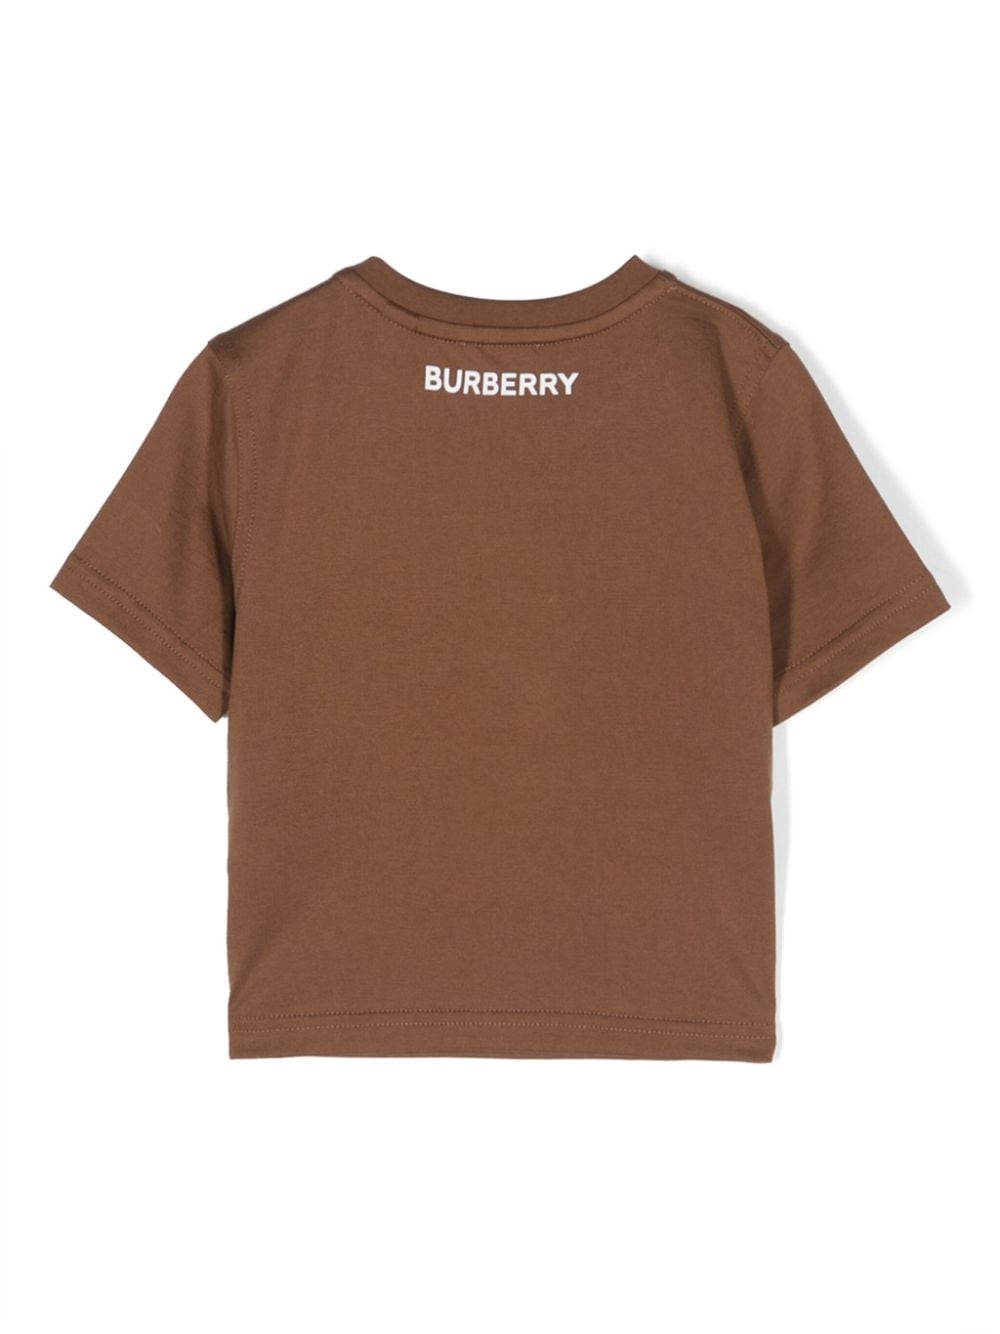 Burberry Kids Geruit T-shirt Bruin